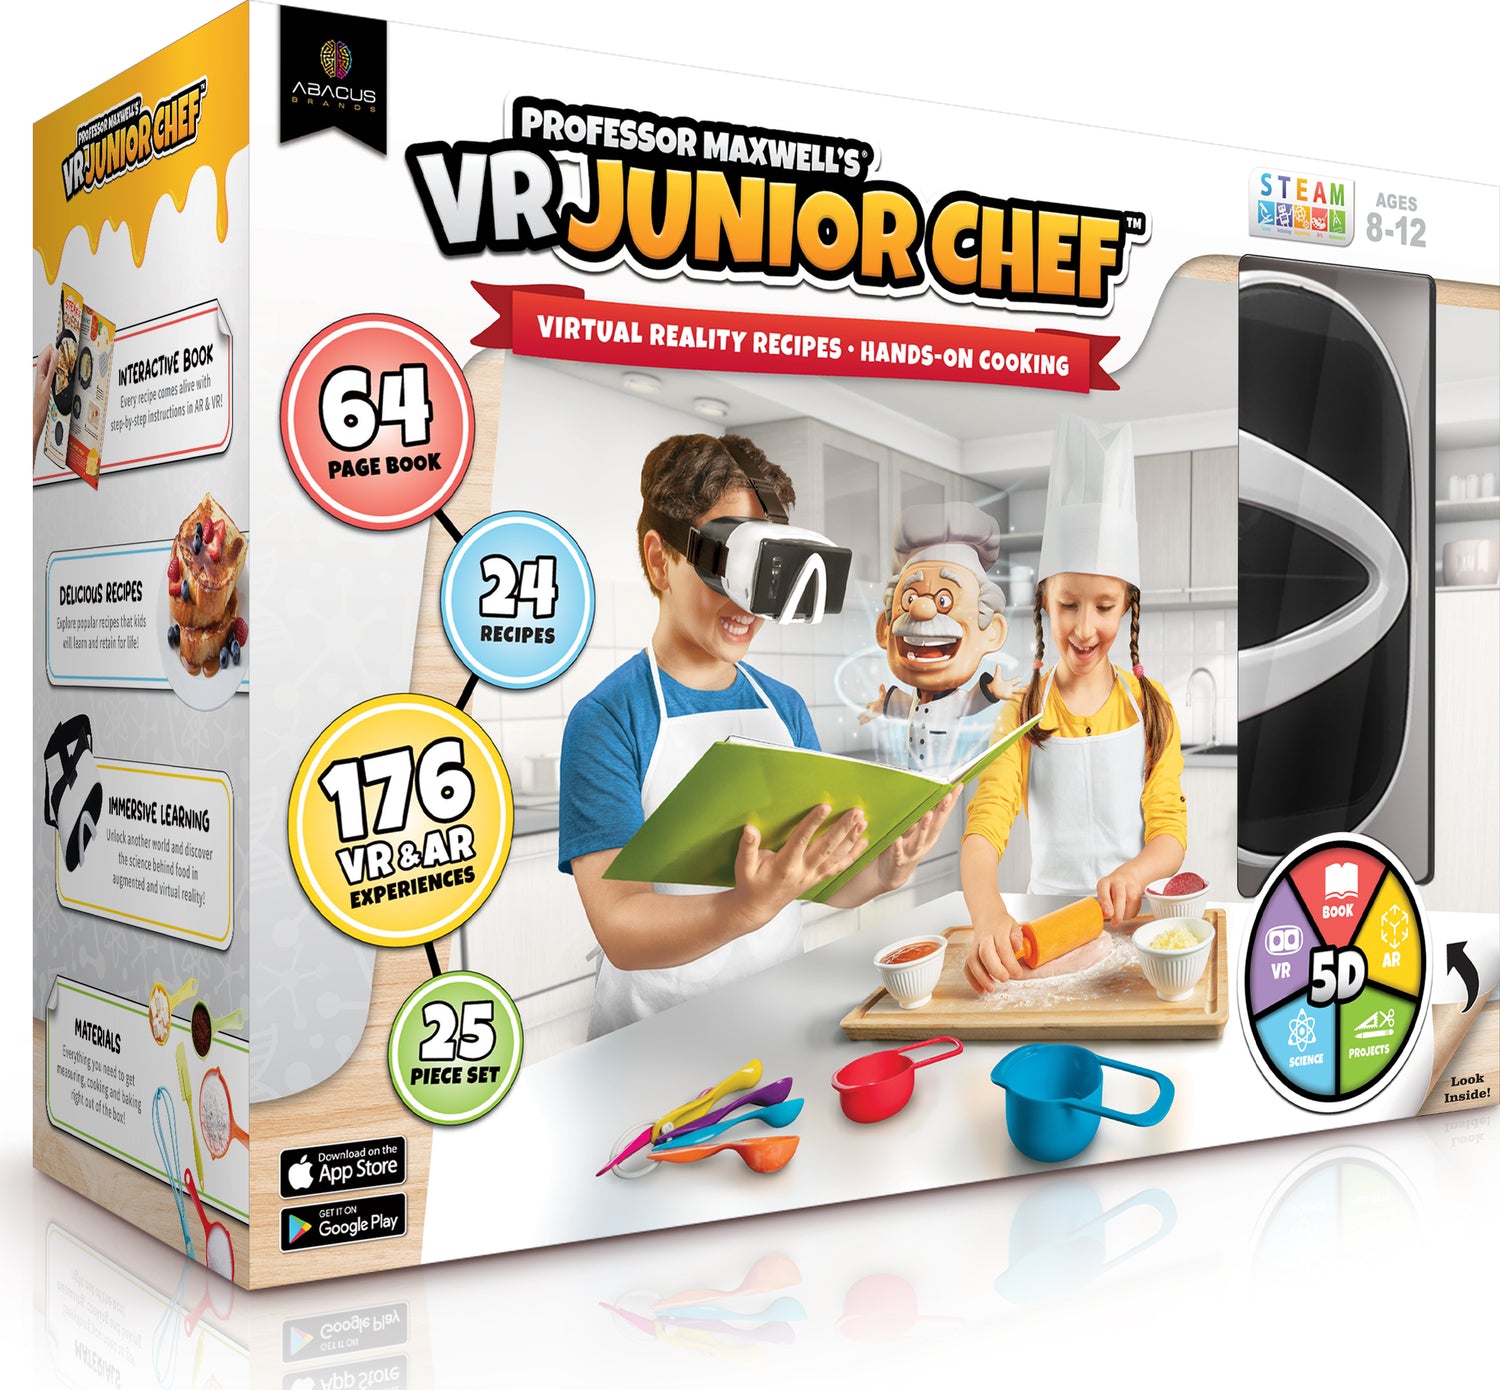 VR Junior Chef